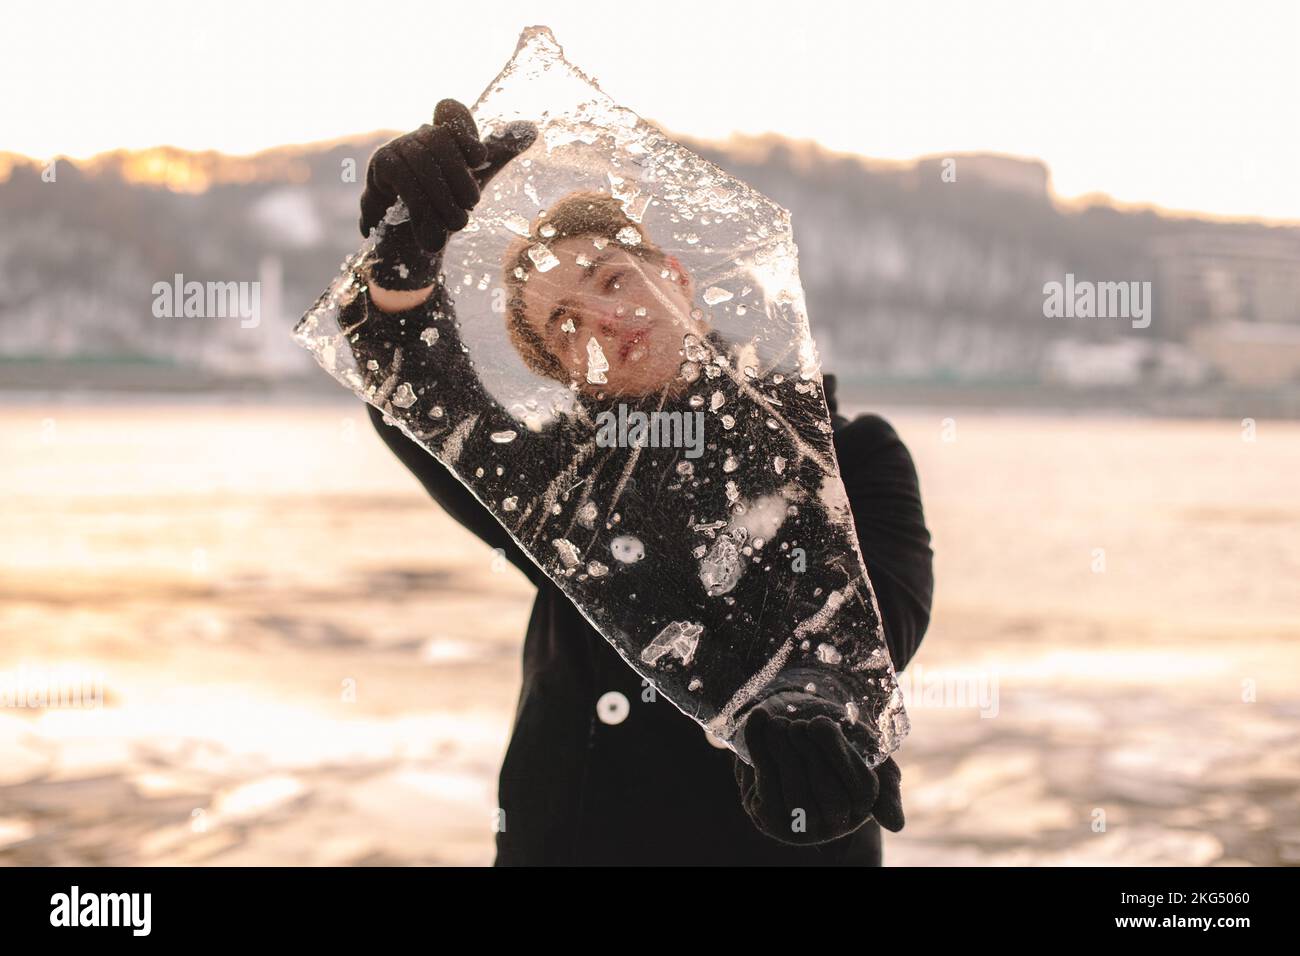 Adolescente mirando a través de un pedazo de hielo mientras lo sostiene de pie al aire libre durante el frío clima frío en invierno Foto de stock